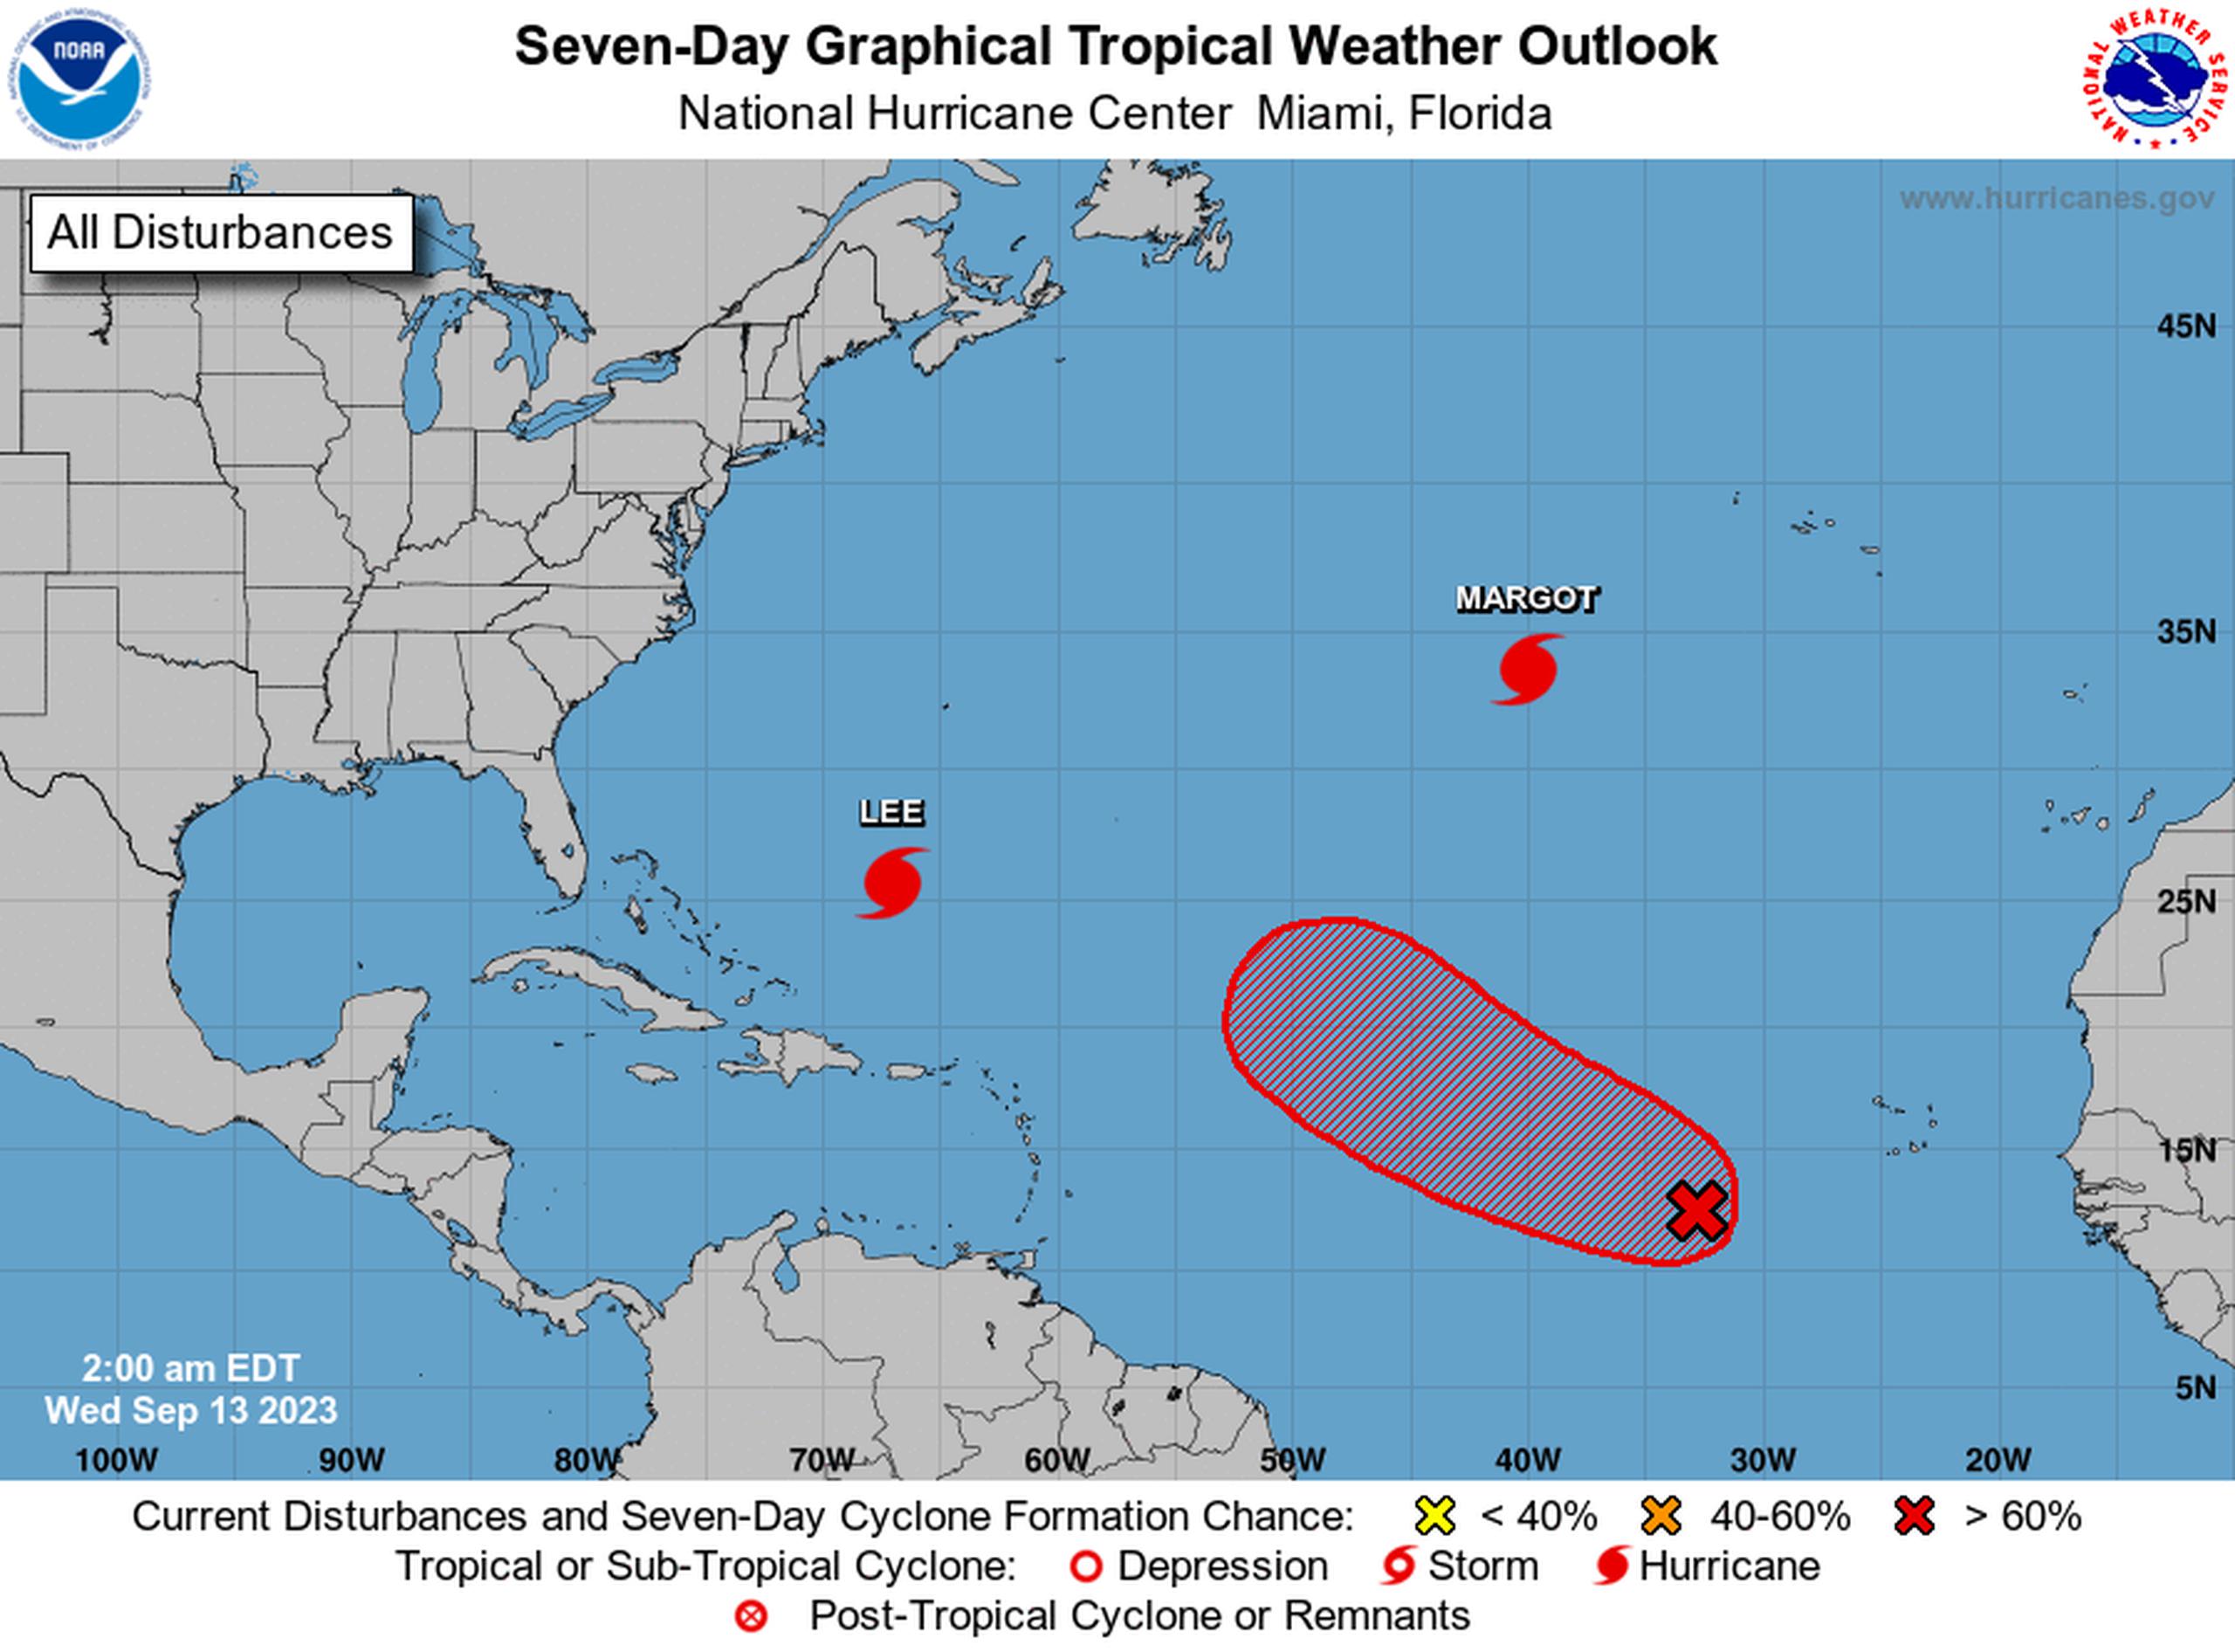 Perspectiva gráfica del clima tropical del Atlántico para siete días el 13 de septiembre de 2023.